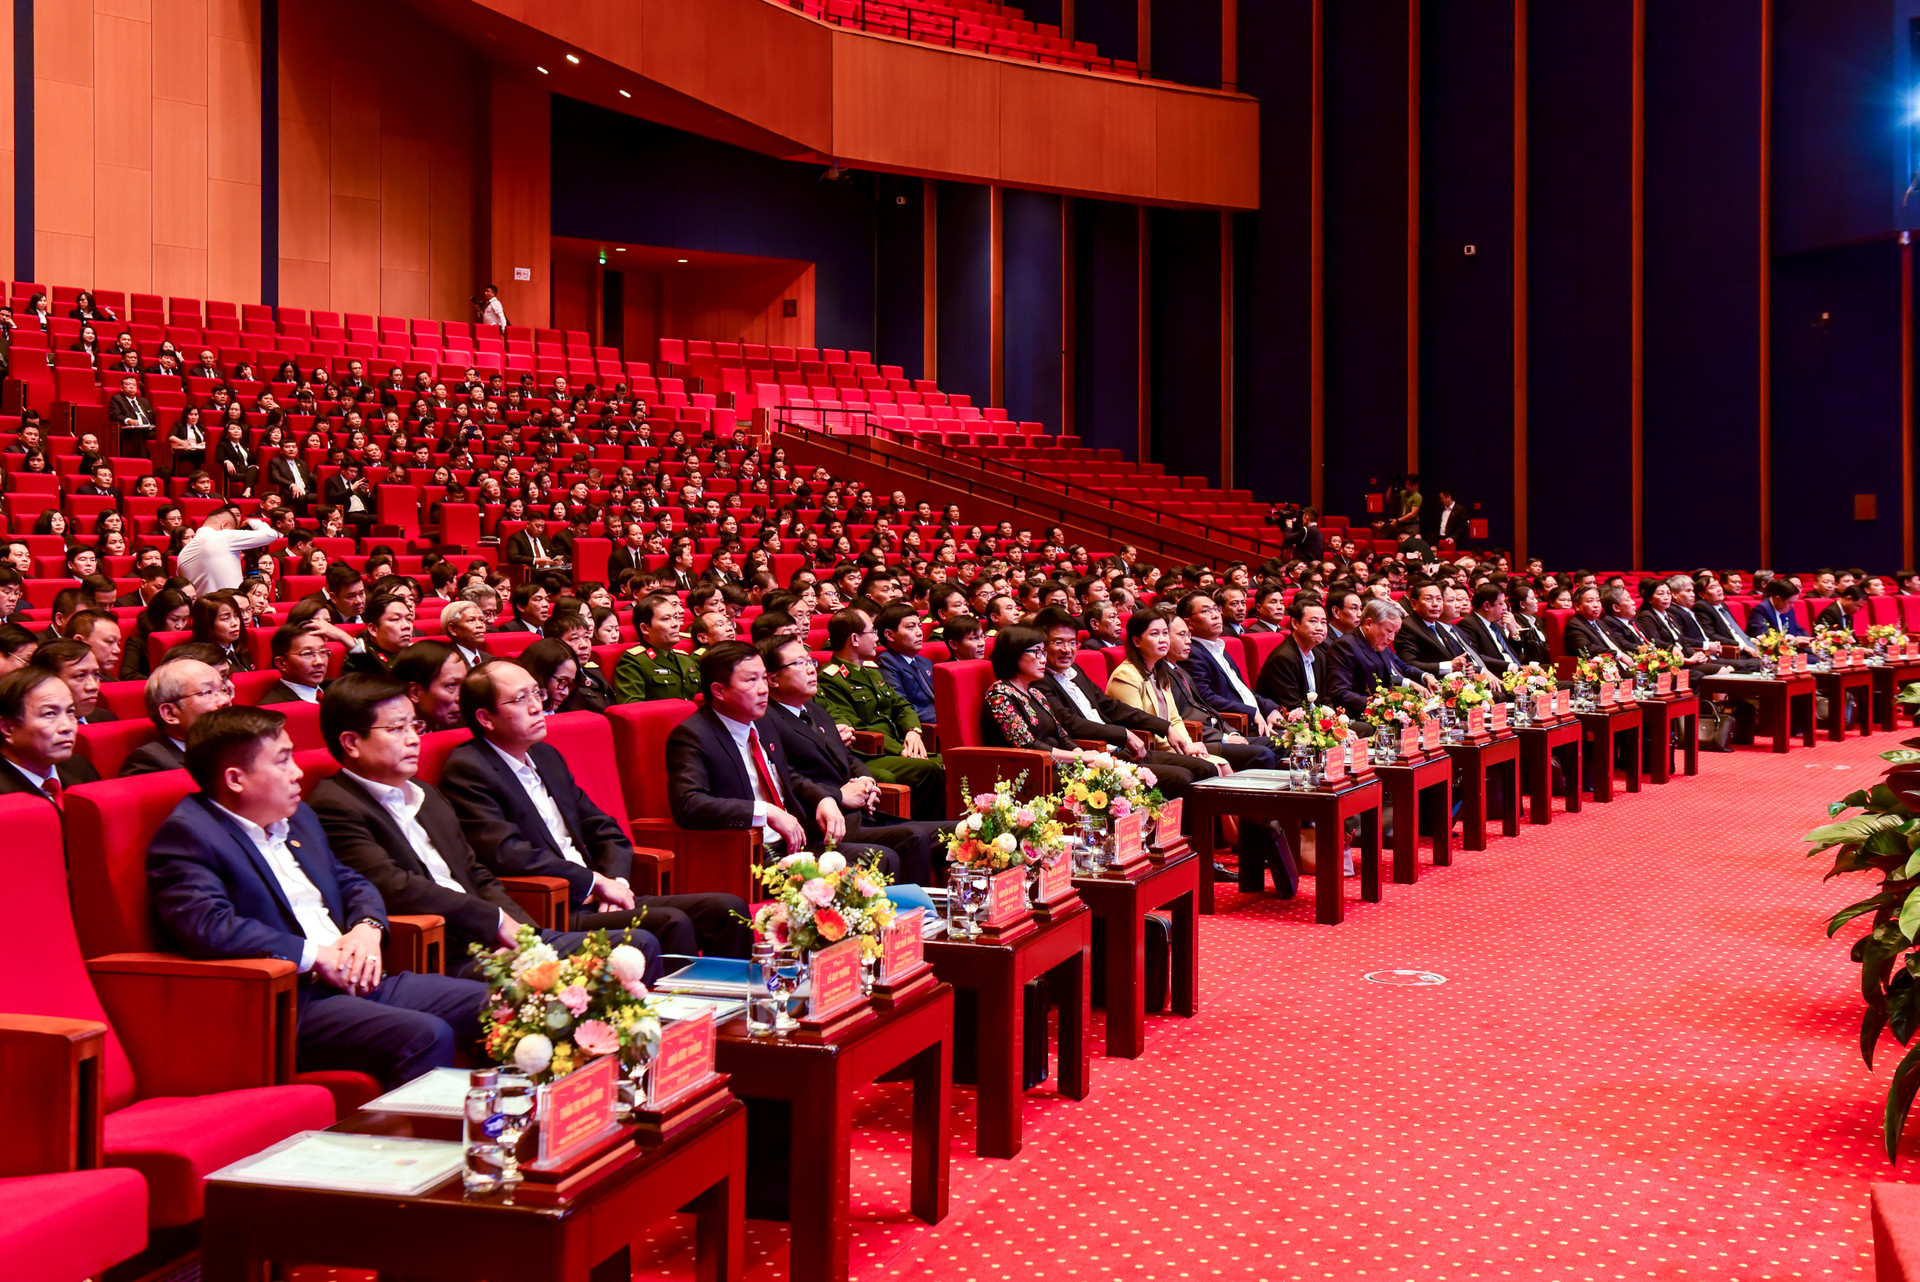 Giới thiệu sách của Tổng Bí thư Nguyễn Phú Trọng trực tiếp tại hội nghị Tòa án: Sự kiện đặc biệt, có ý nghĩa lớn